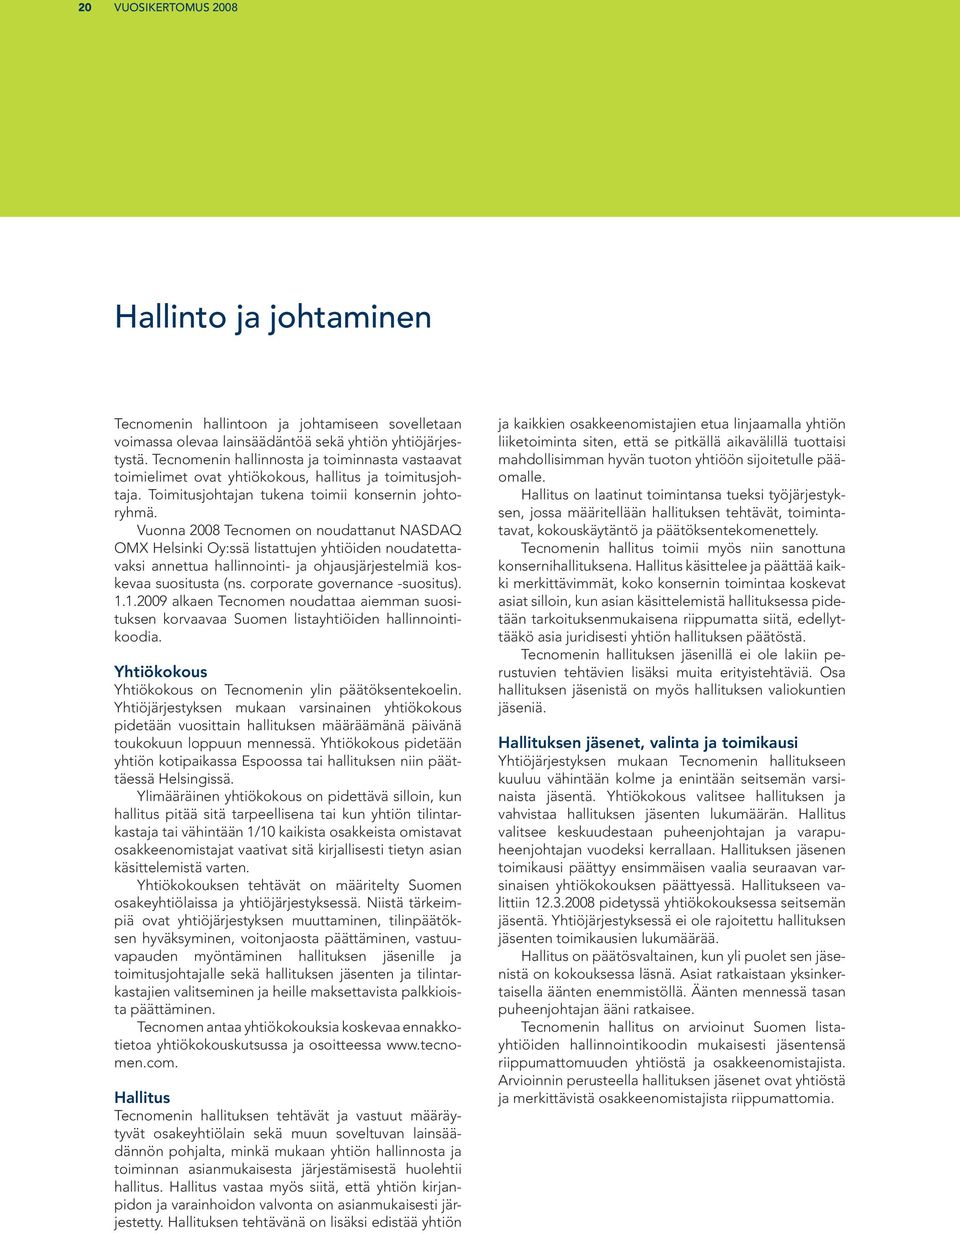 Vuonna 2008 Tecnomen on noudattanut NASDAQ OMX Helsinki Oy:ssä listattujen yhtiöiden noudatettavaksi annettua hallinnointi- ja ohjausjärjestelmiä koskevaa suositusta (ns.